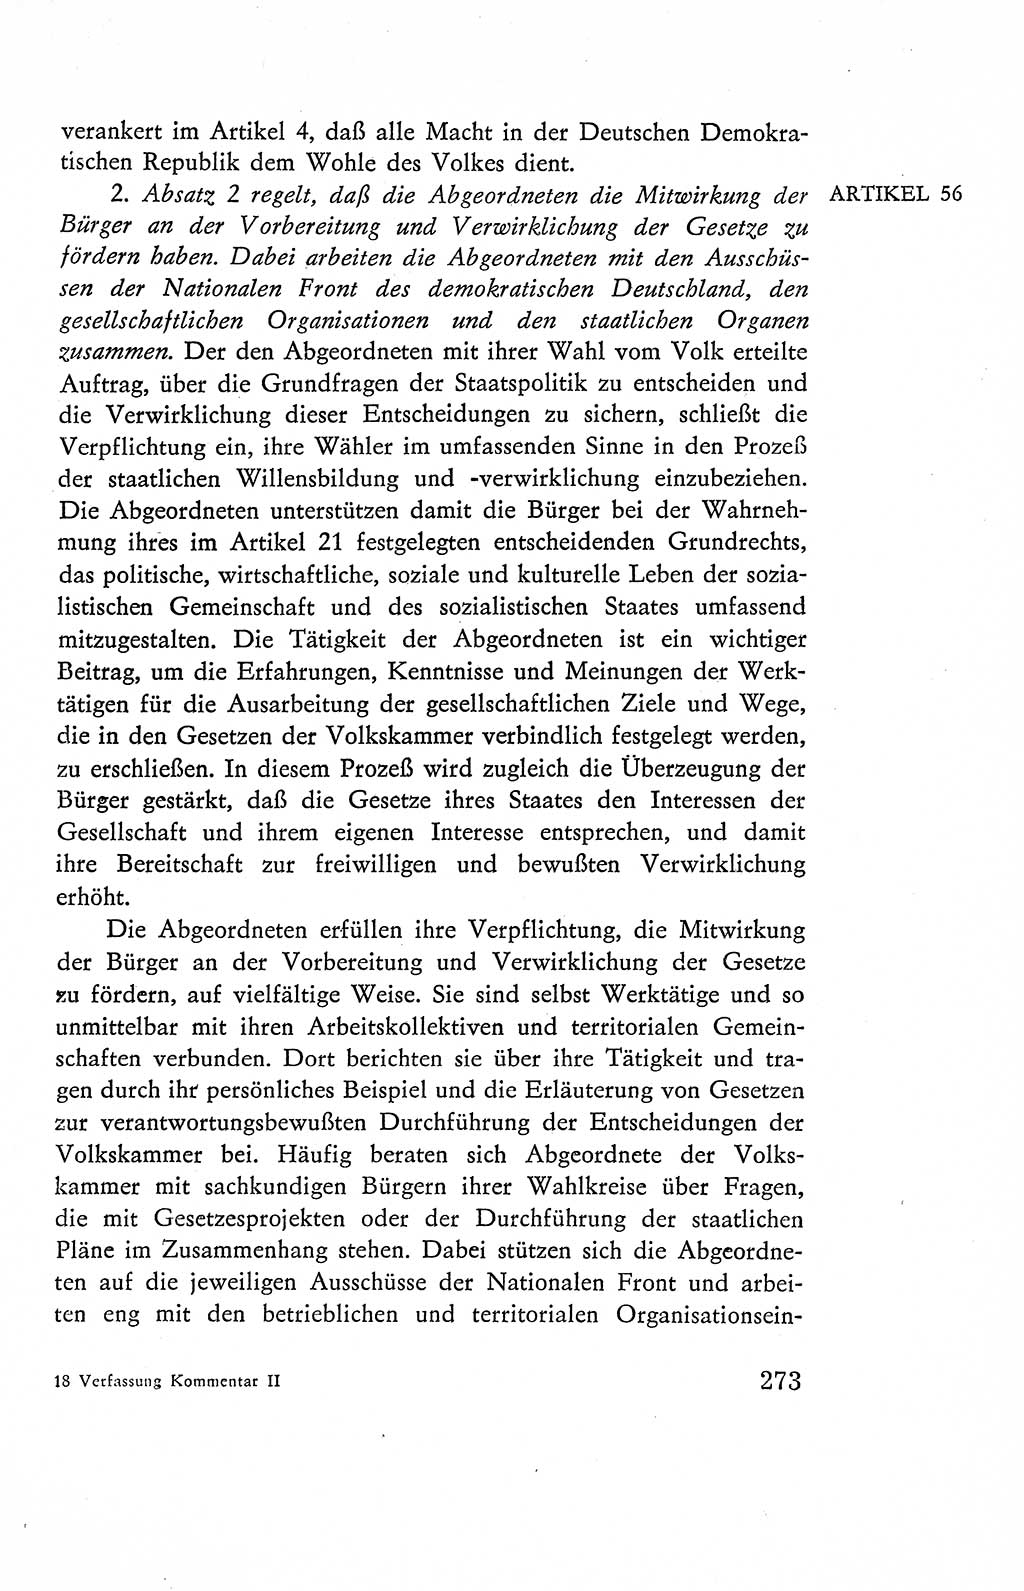 Verfassung der Deutschen Demokratischen Republik (DDR), Dokumente, Kommentar 1969, Band 2, Seite 273 (Verf. DDR Dok. Komm. 1969, Bd. 2, S. 273)